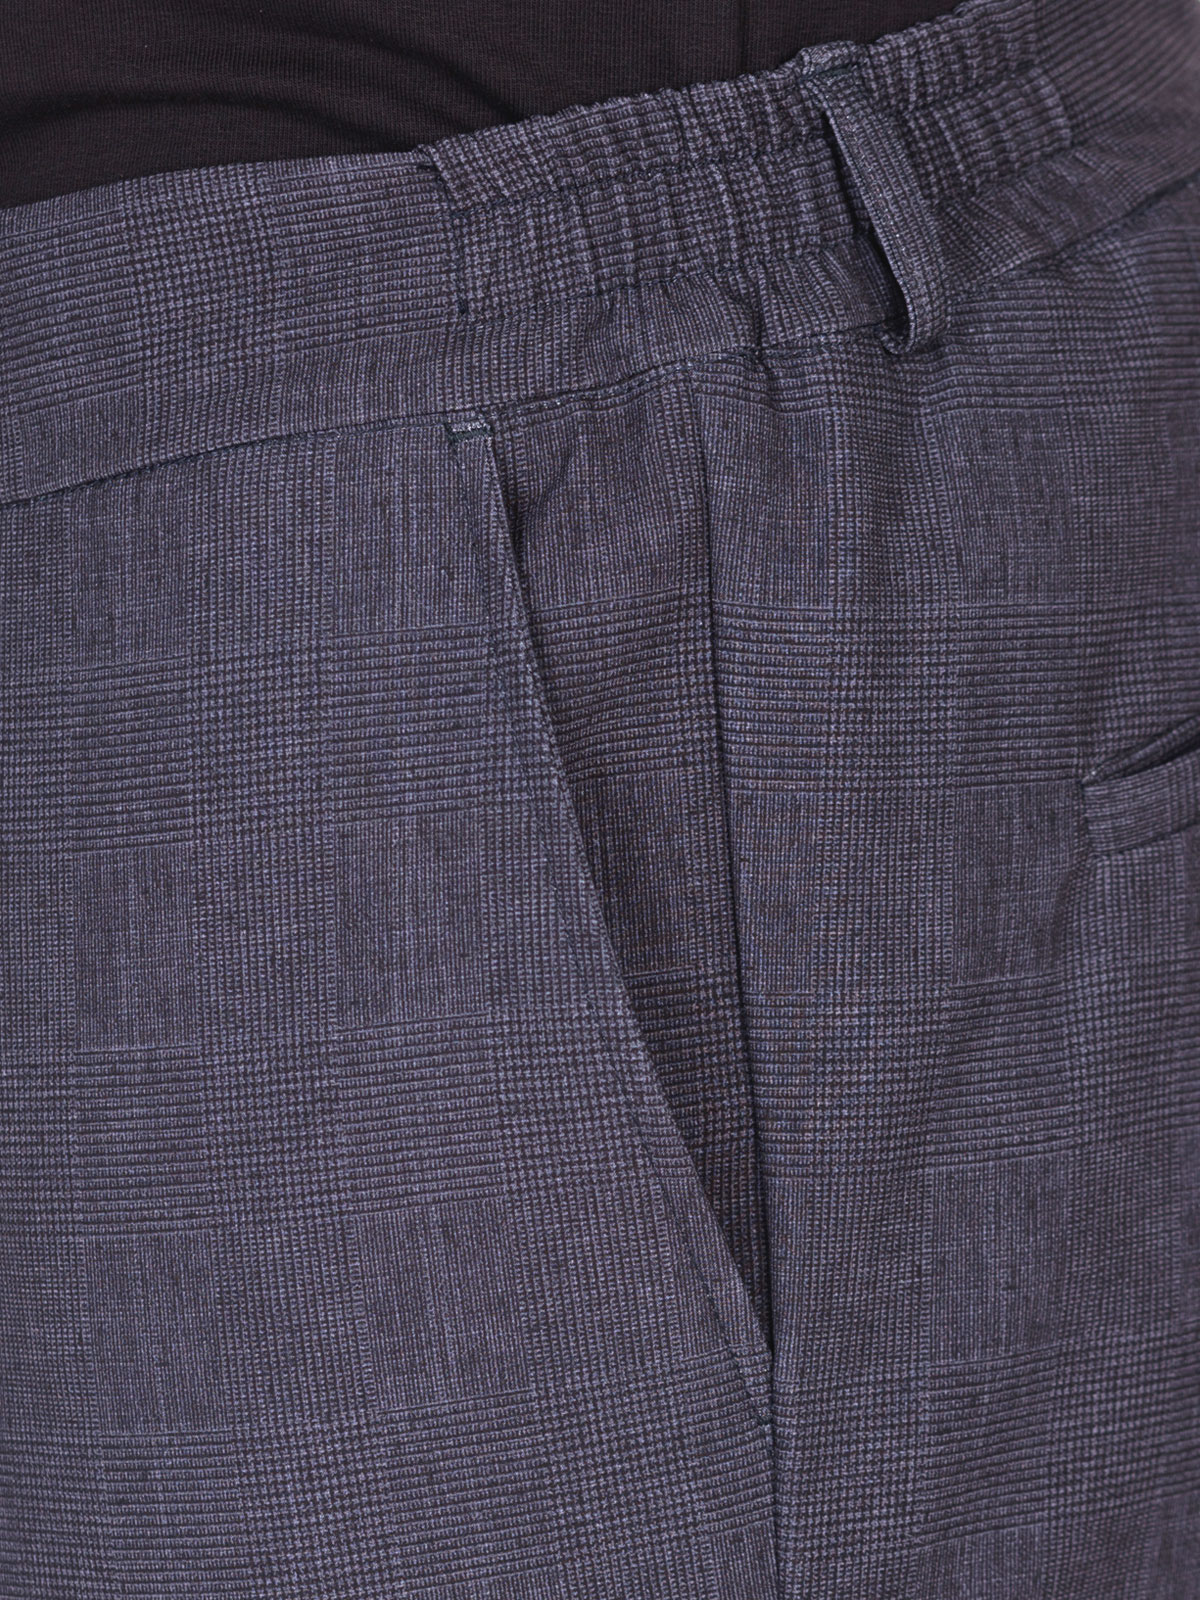 Мъжки панталон в тъмно сиво - 29007 98.00 лв img3